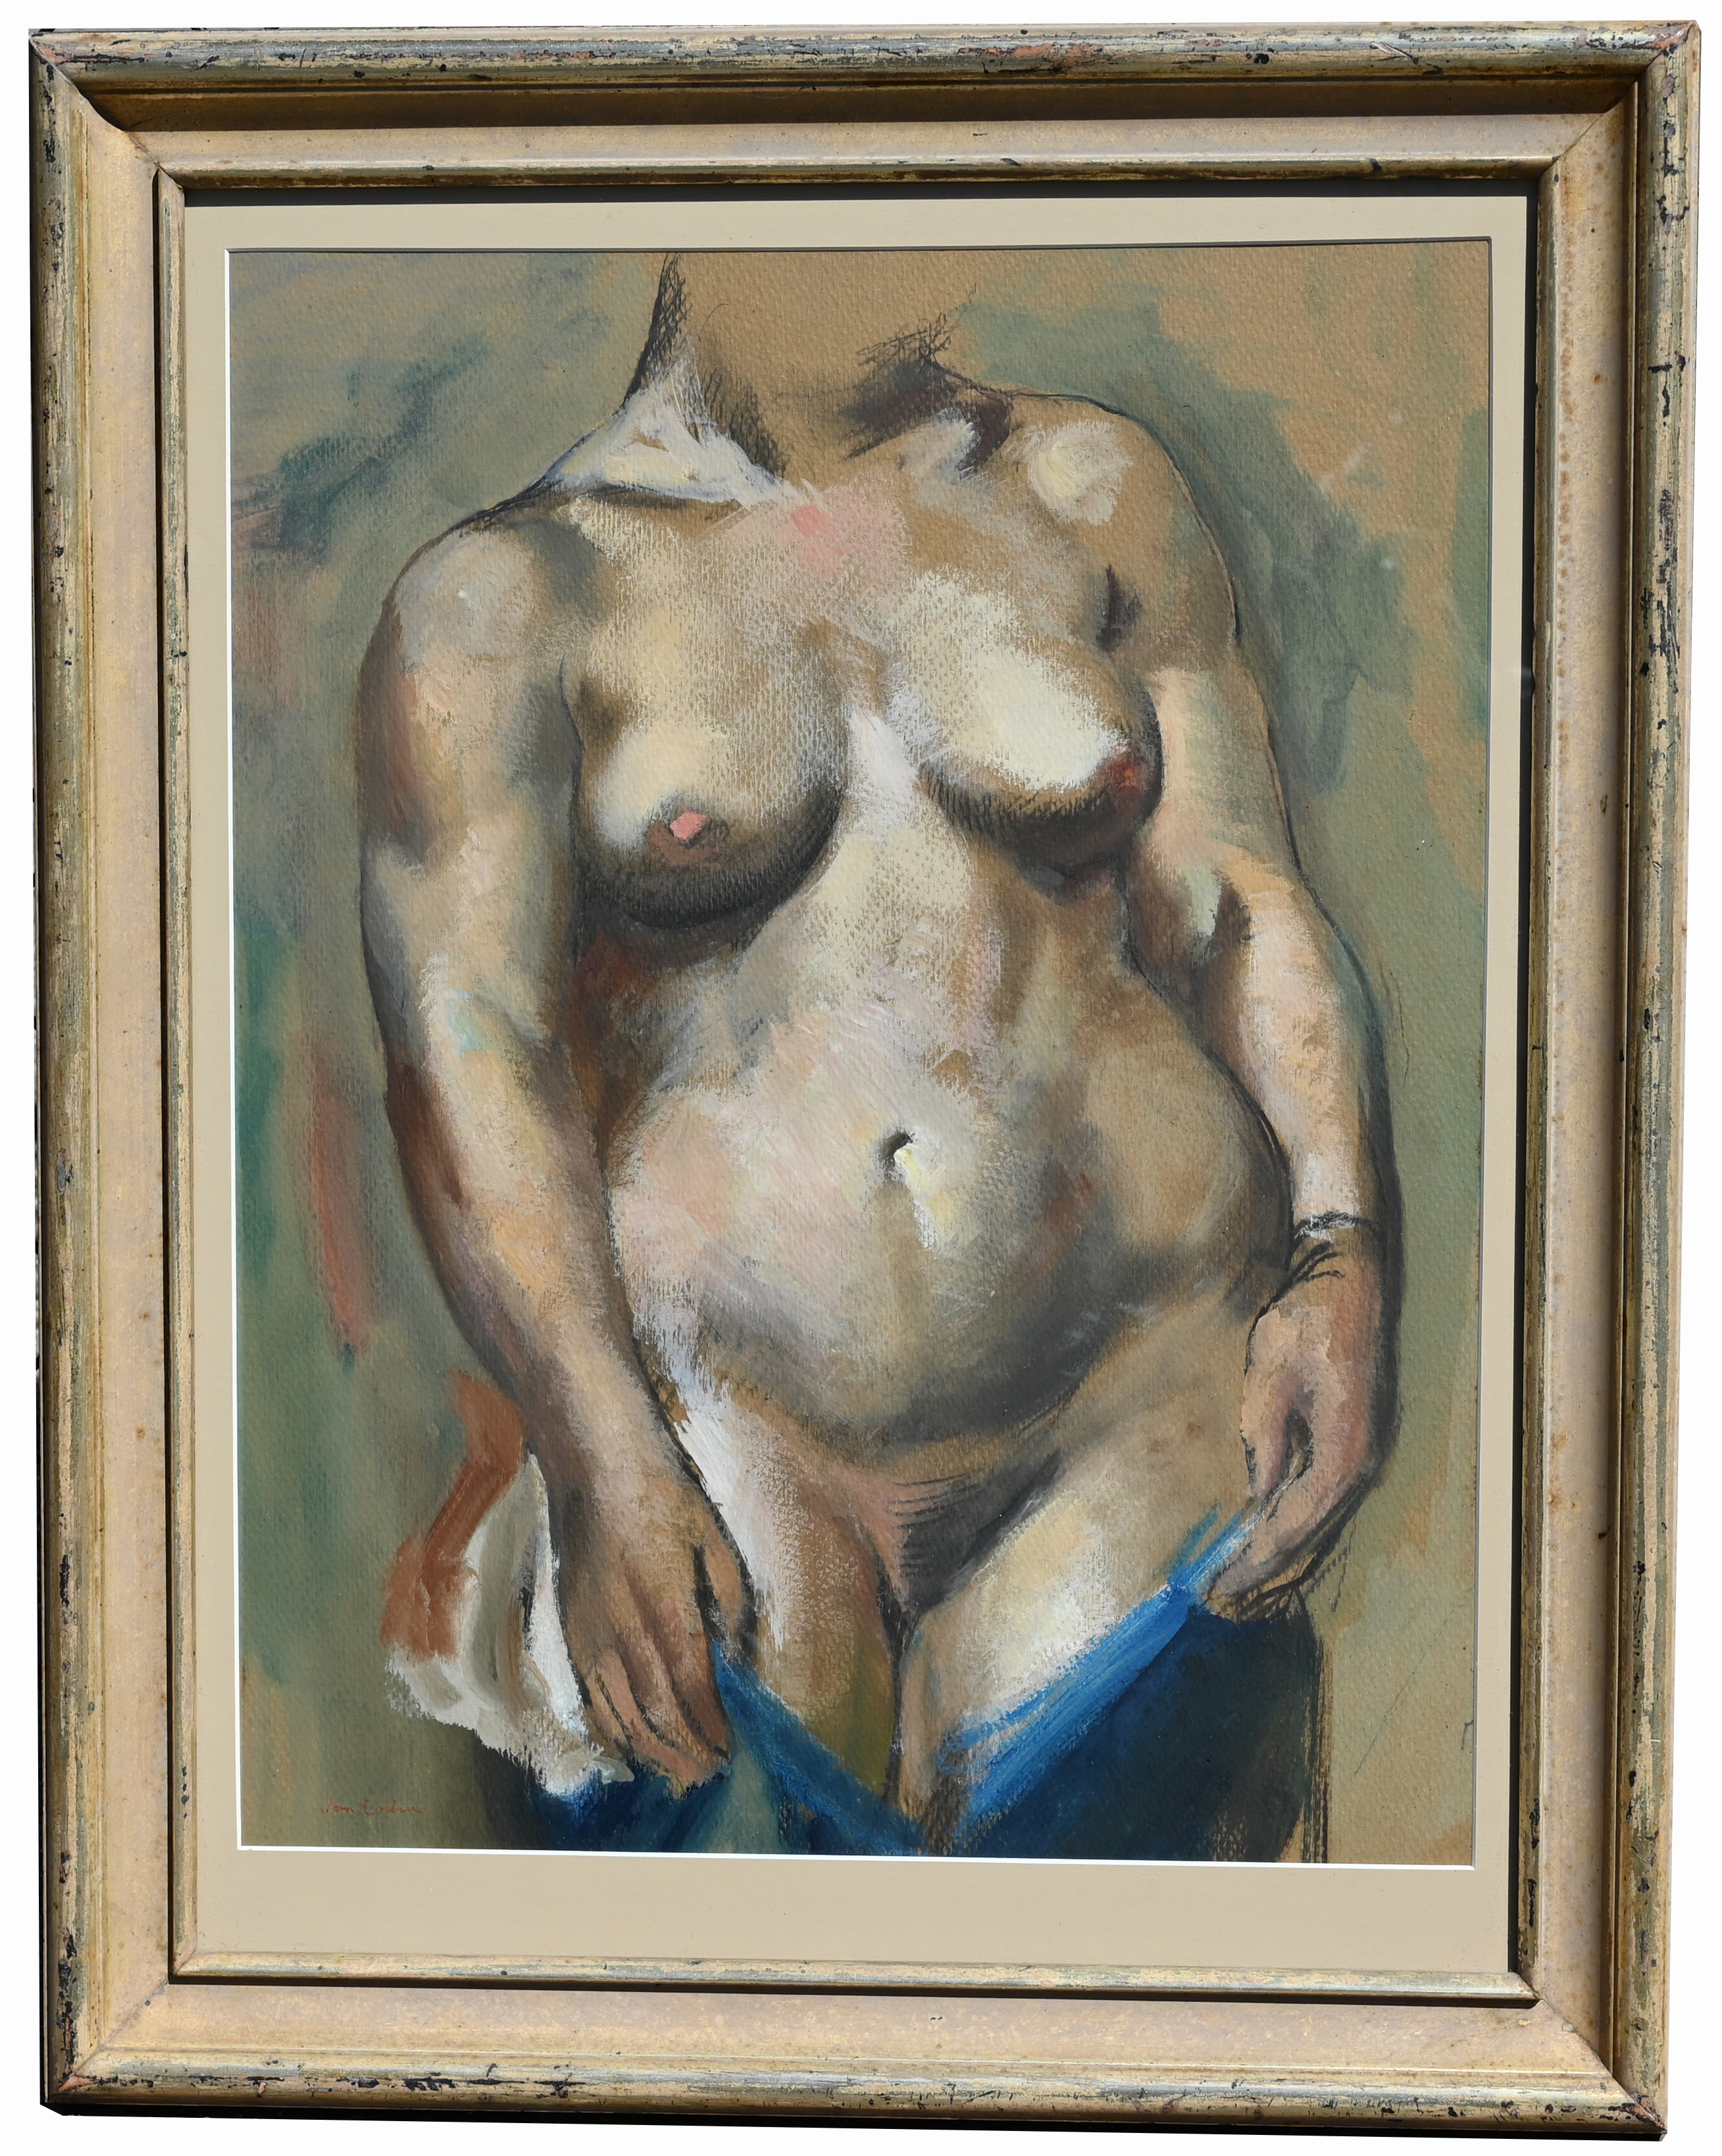 Jon Corbino (NY, 1905 - 1964) "Torso", Exhibited - Image 2 of 4